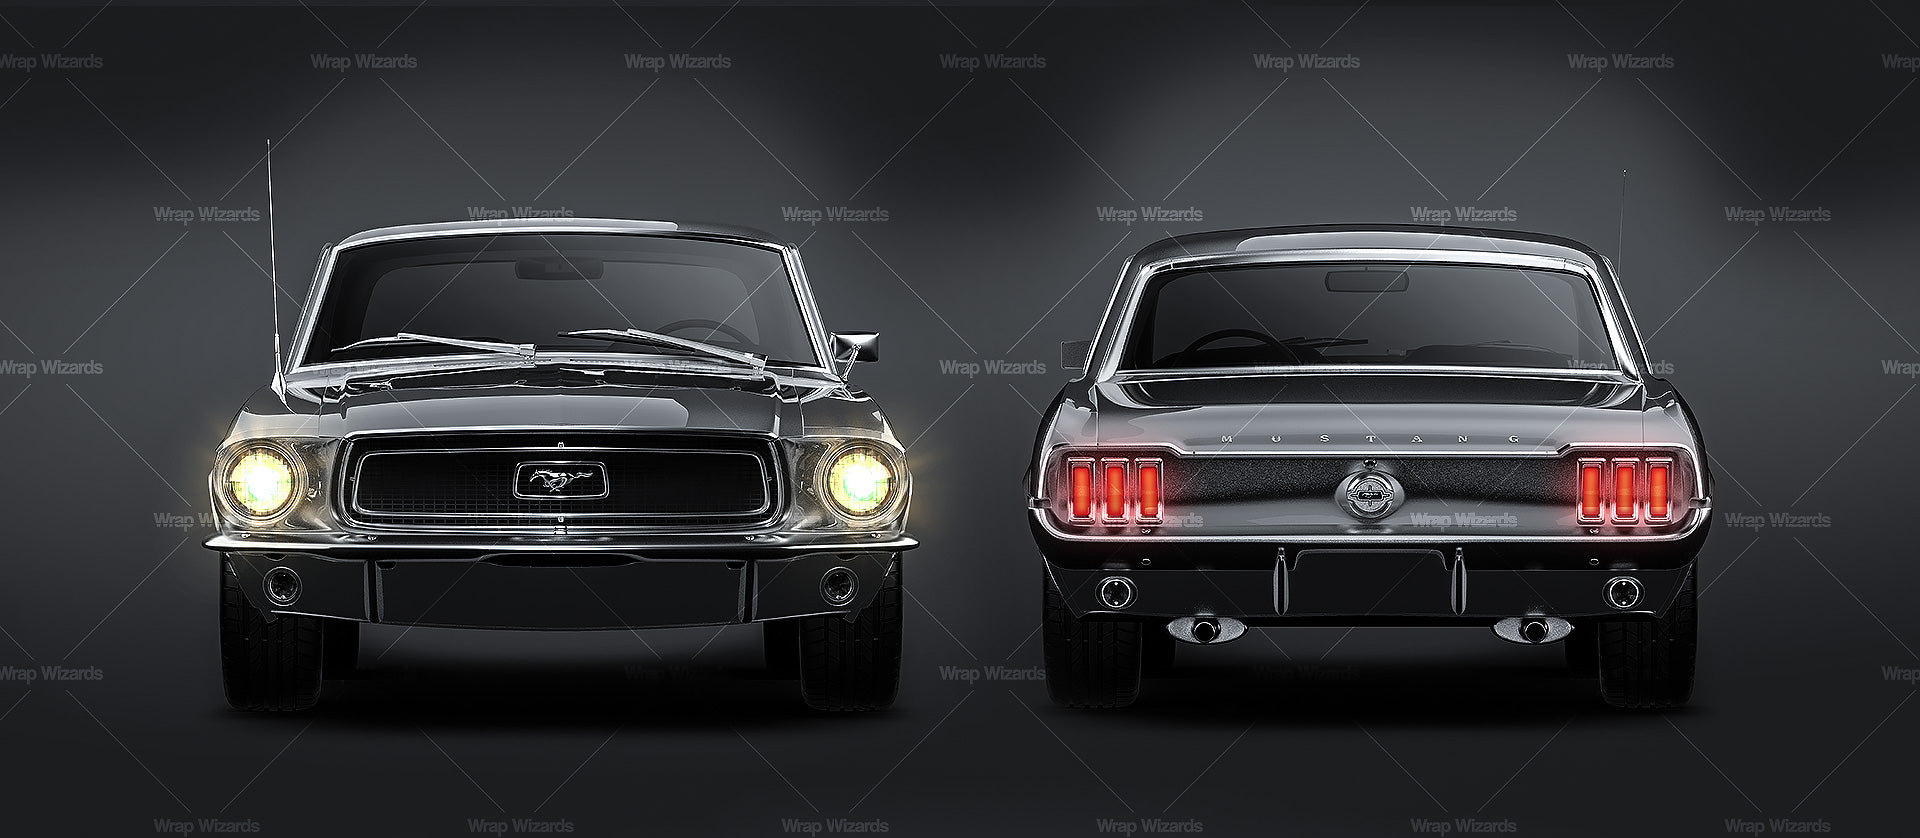 Ford Mustang '68 - Car Mockup